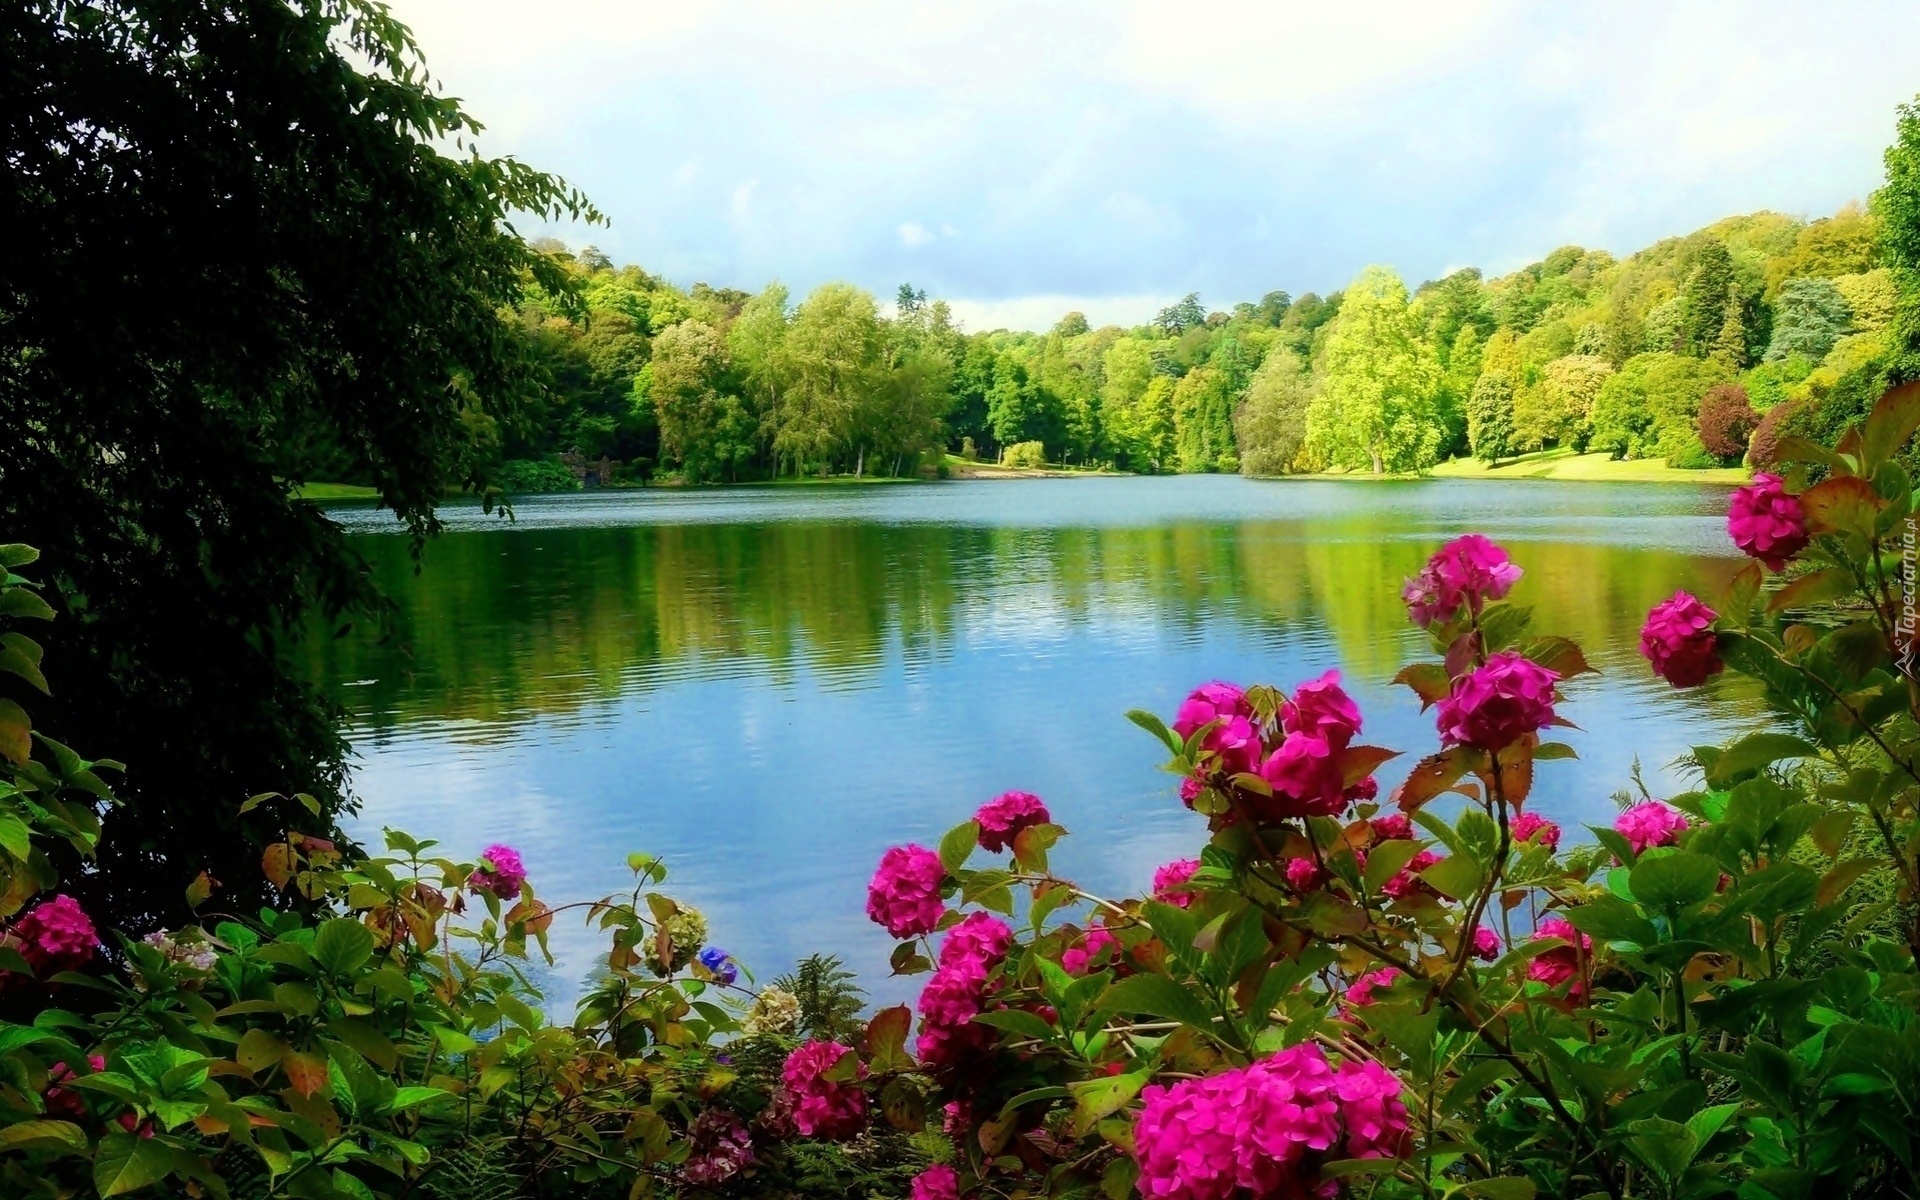 Jezioro, Drzewa, Kwiaty, Park, Wiosna